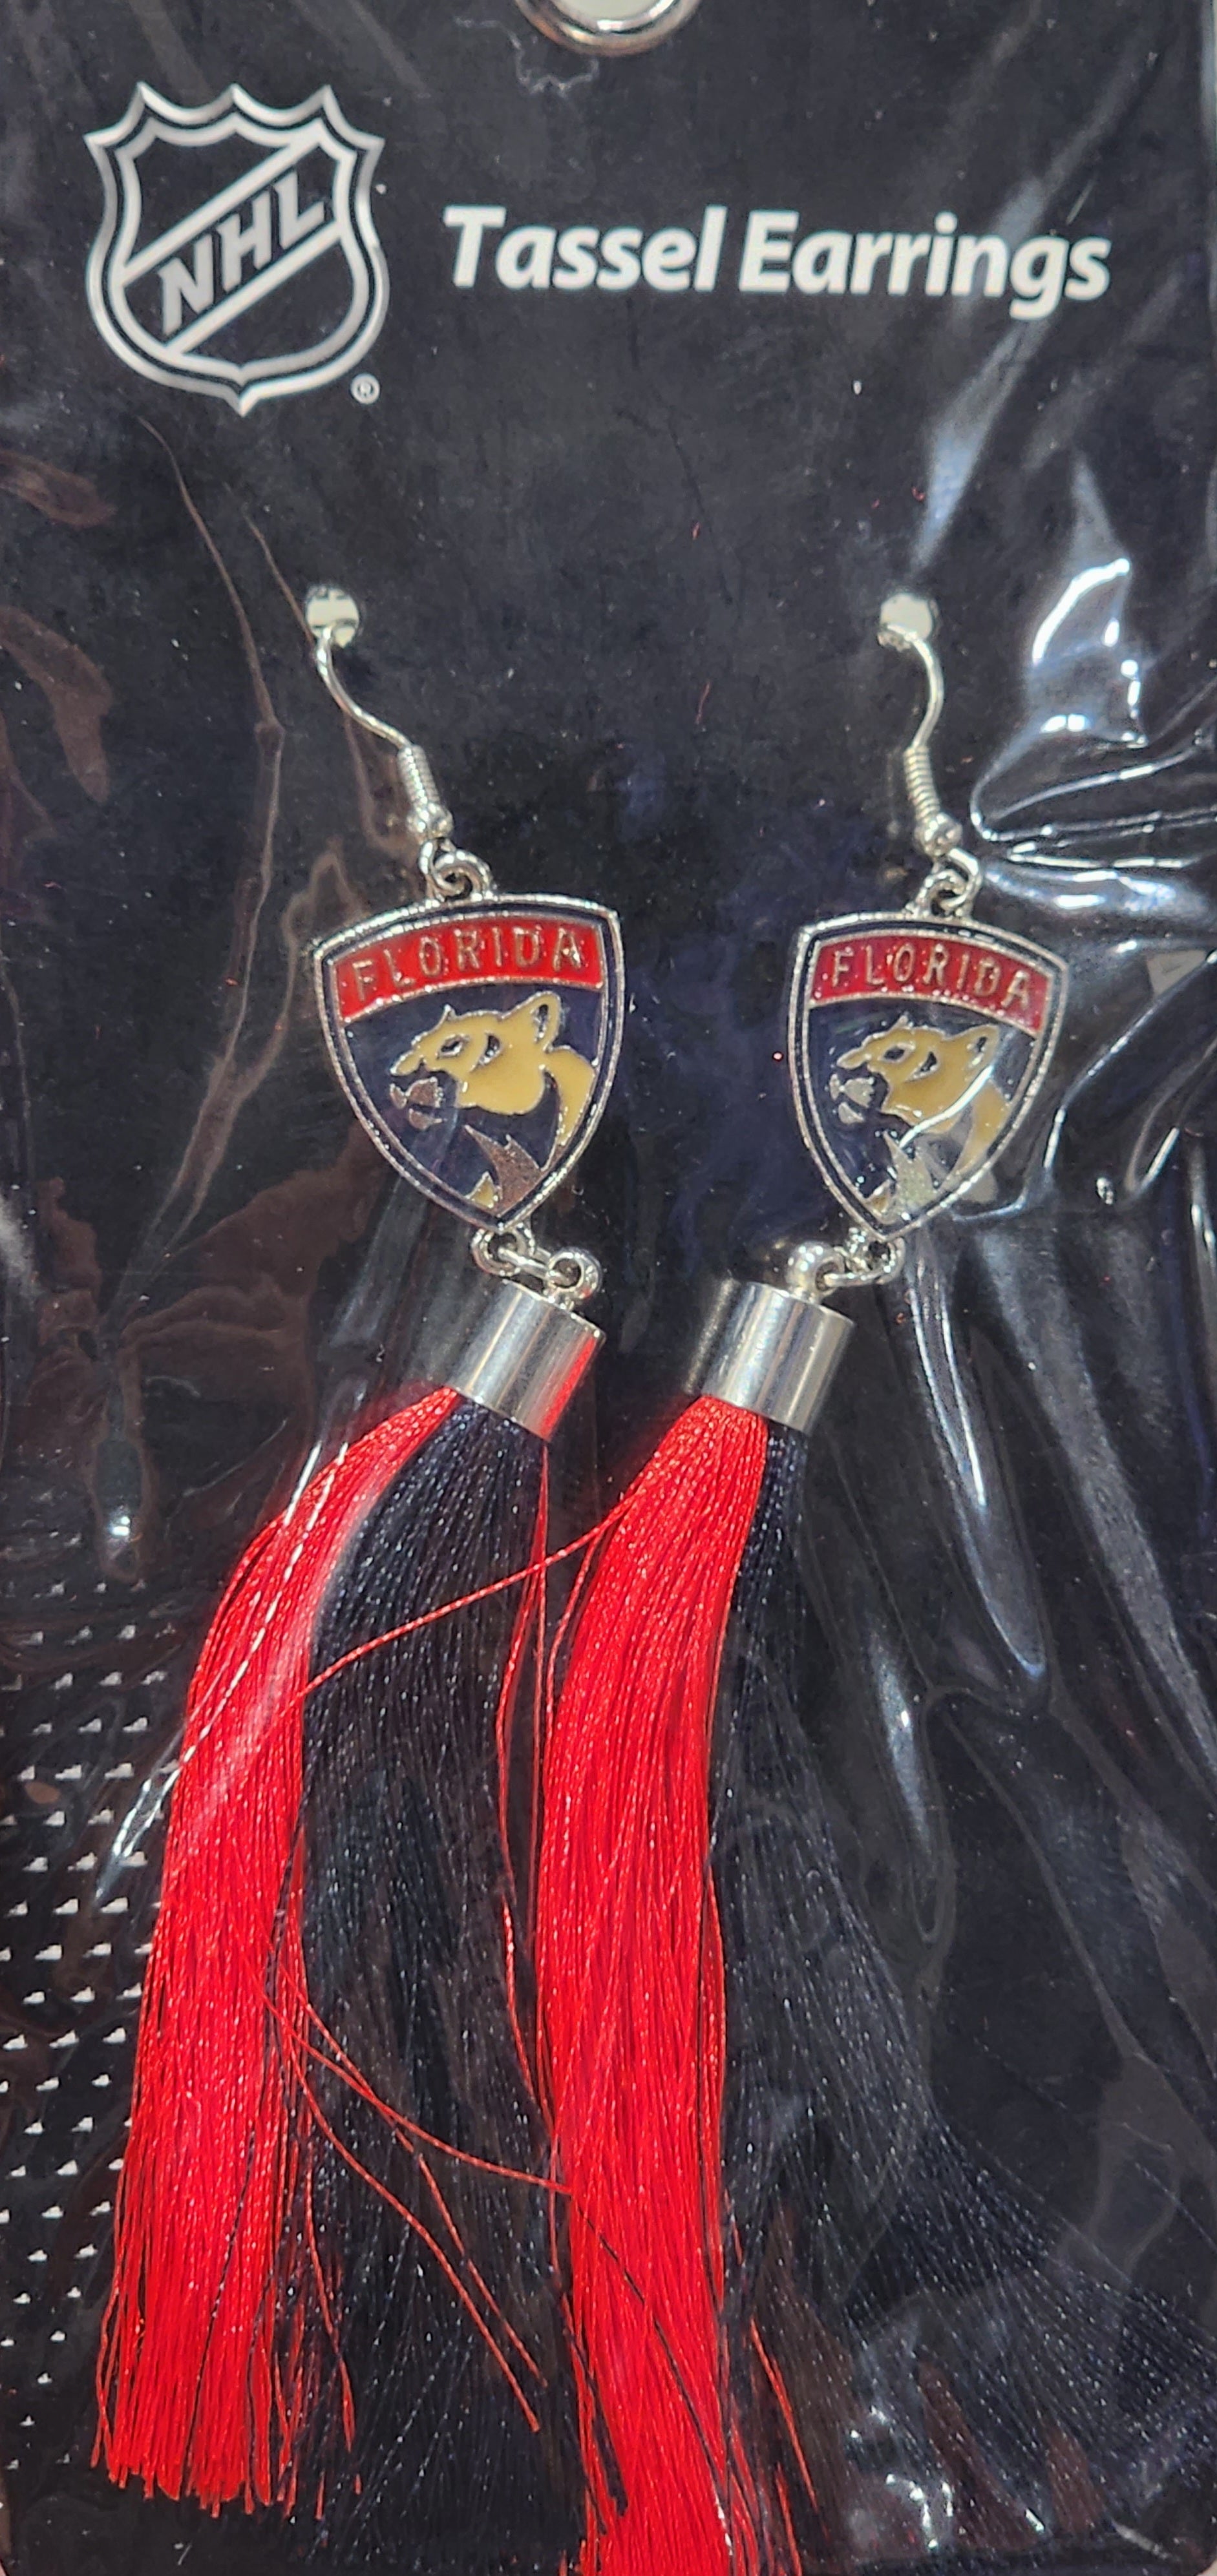 Florida Panthers Tassel Earrings